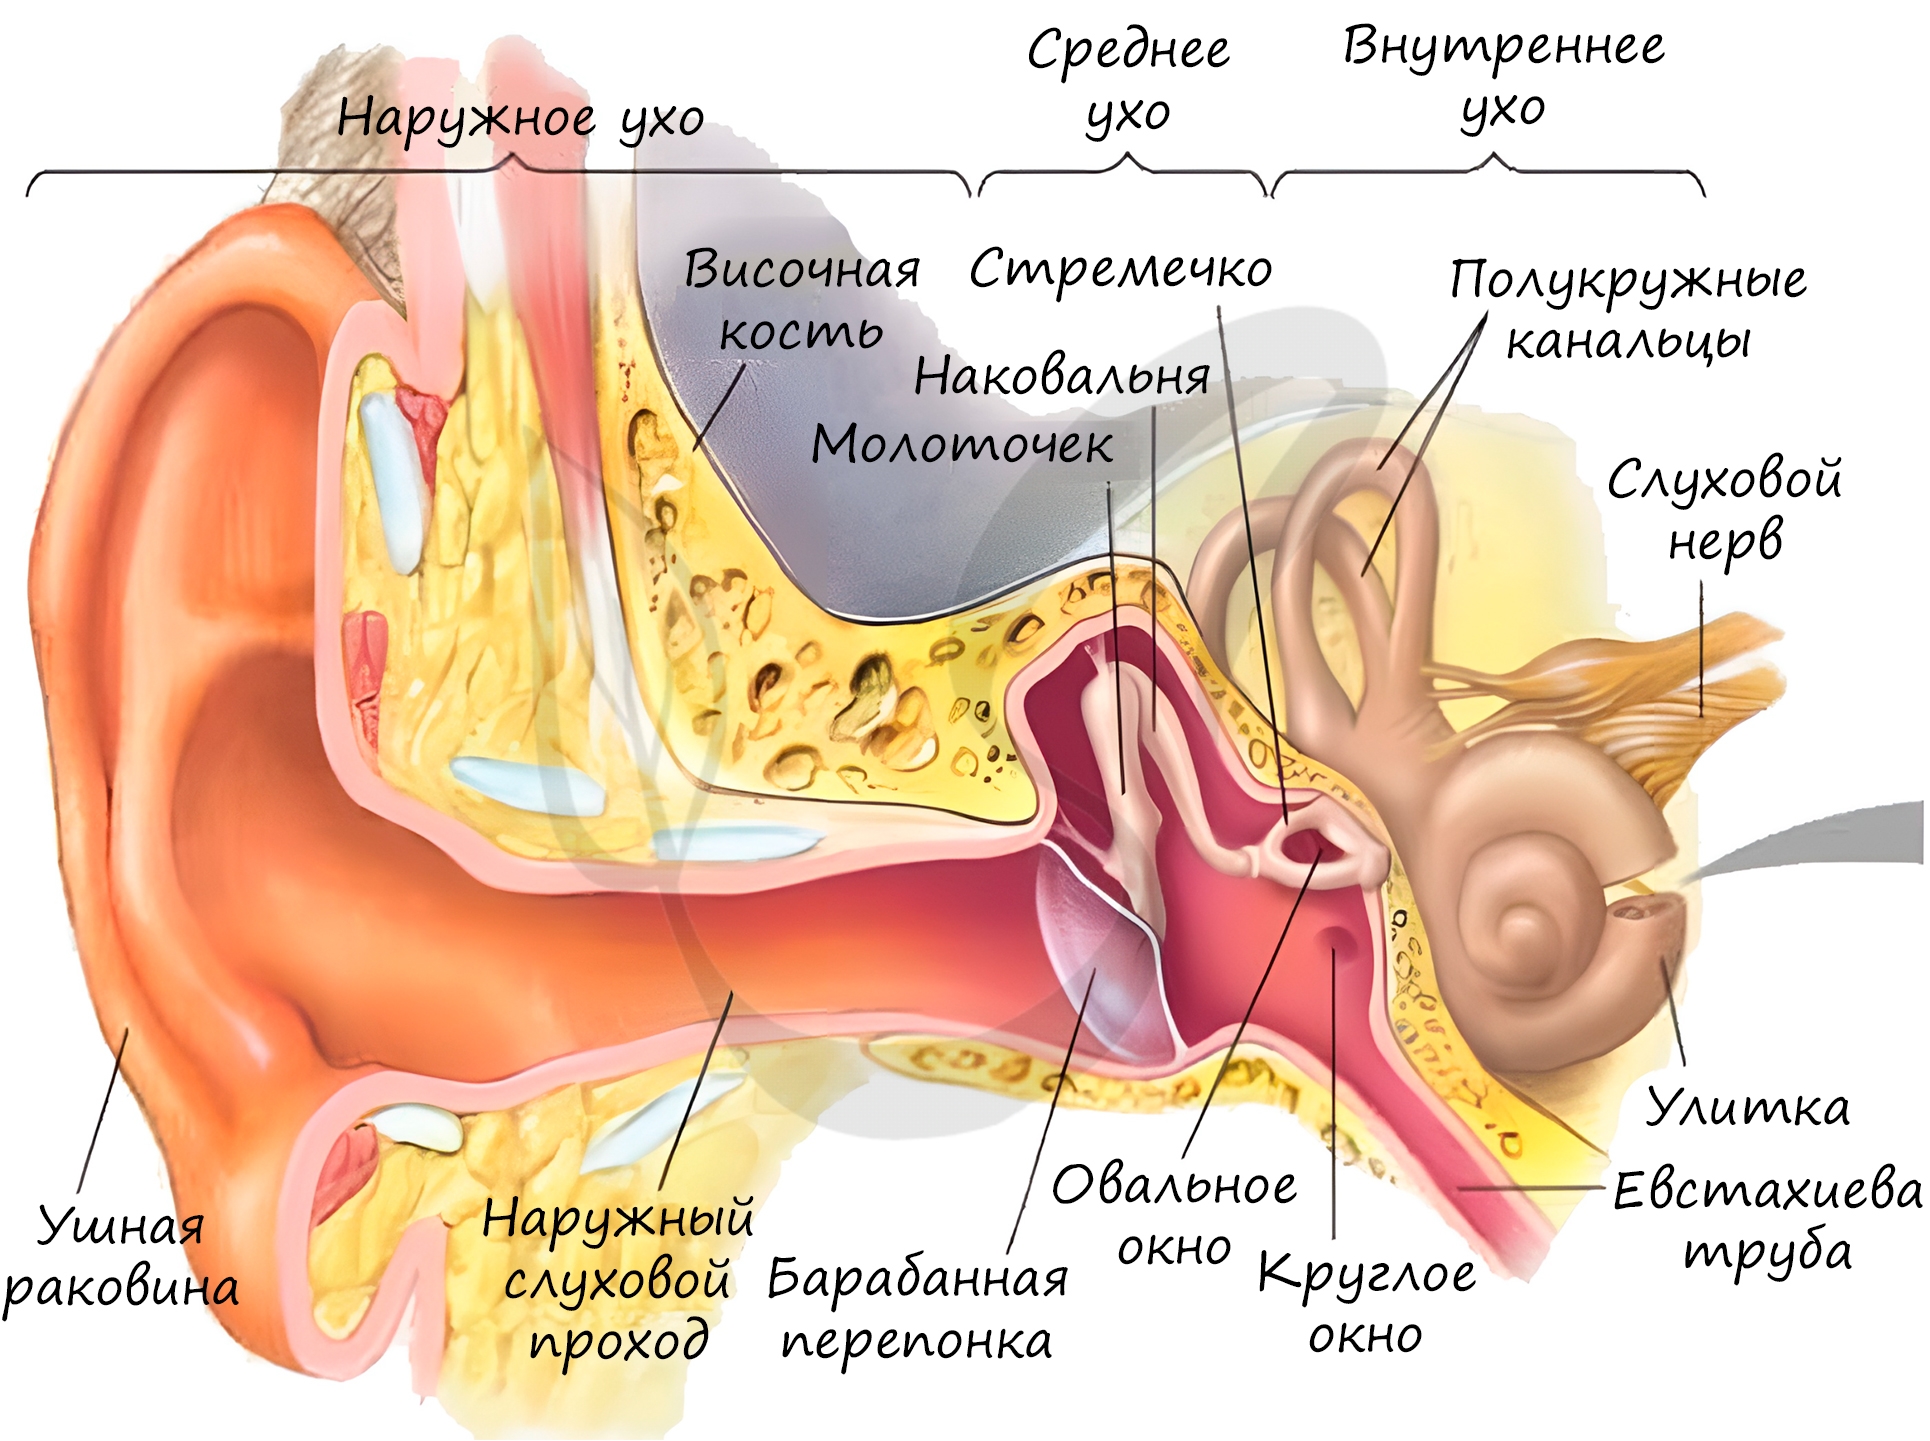 Названия внутреннего уха. Строение уха человека евстахиева труба. Орган слуха наружное ухо среднее ухо внутреннее ухо. Строение наружного уха барабанная перепонка. Орган слуха внутреннее ухо анатомия.